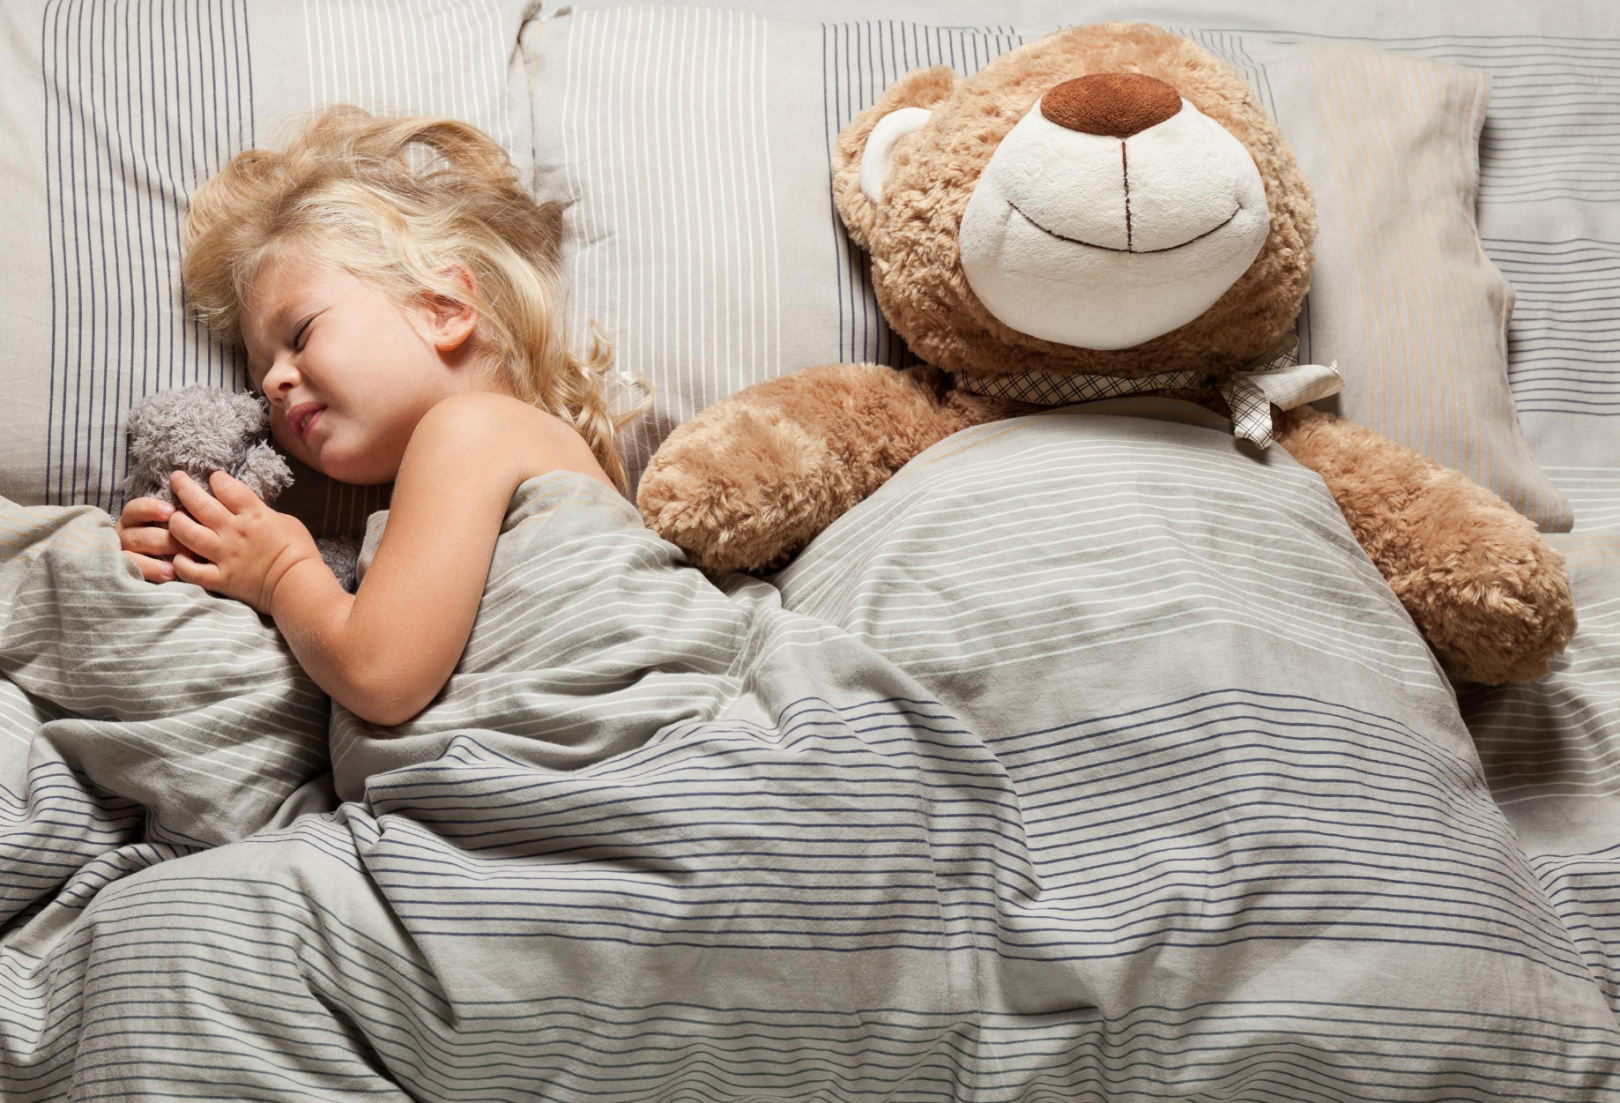 problemy ze snem u dziecka